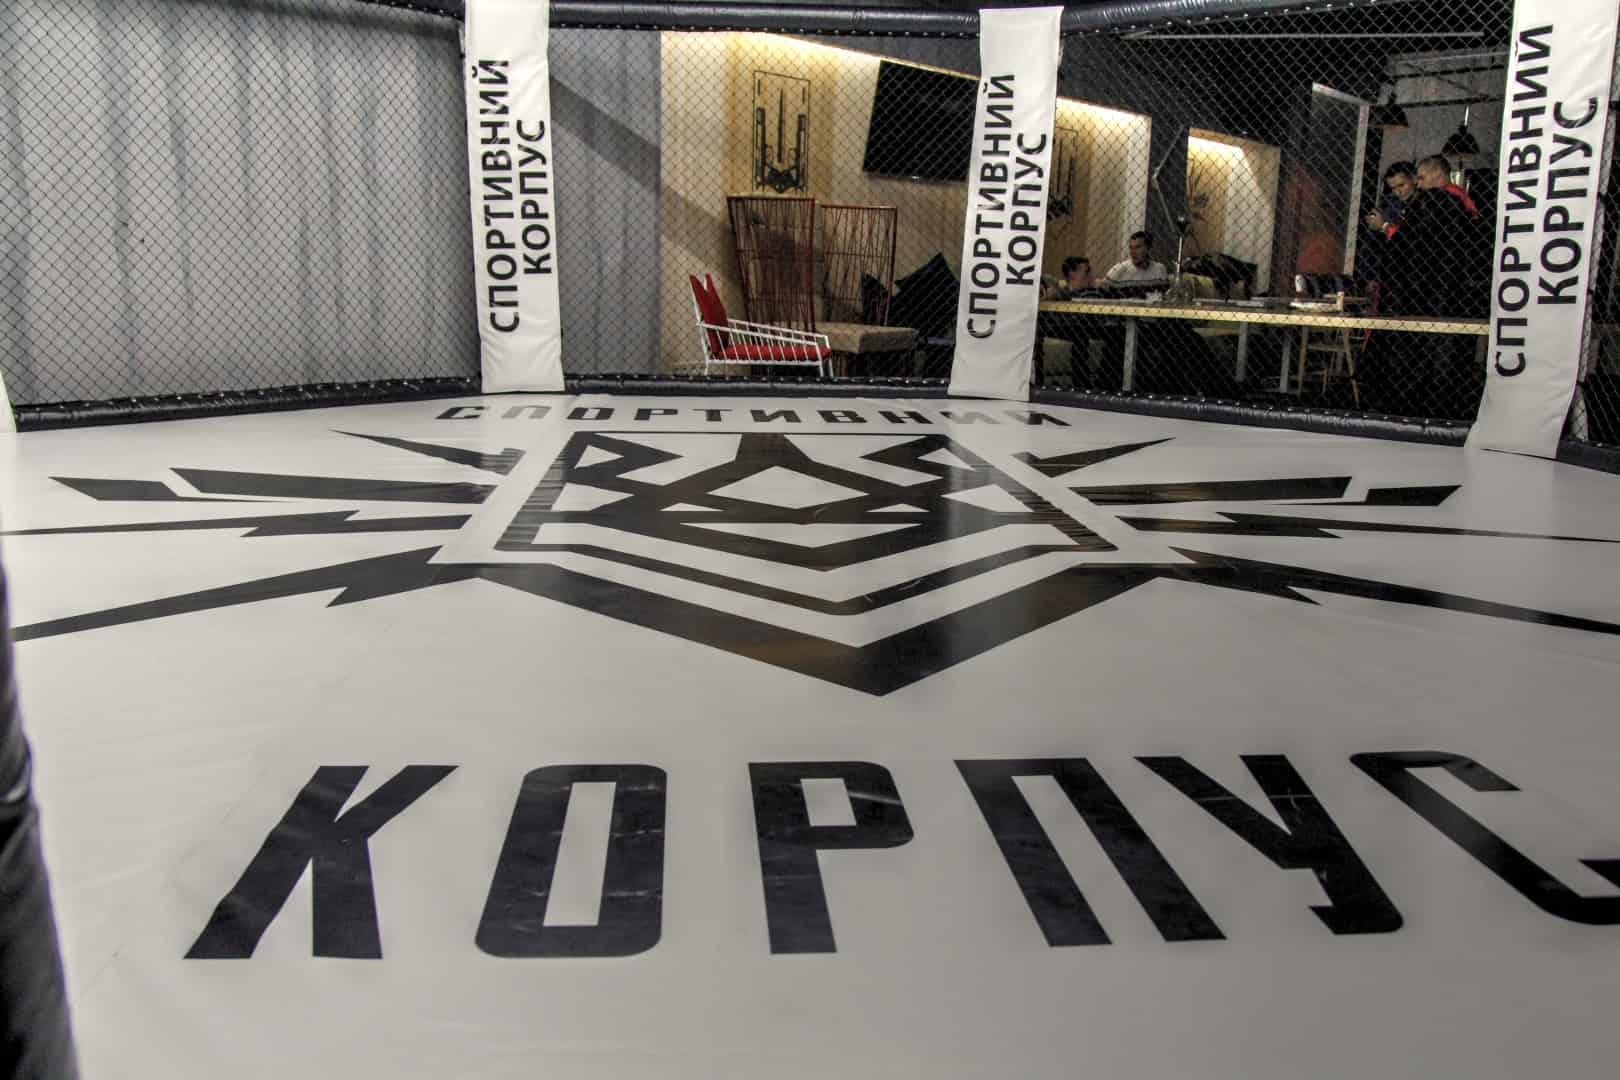 In gleich mehreren eigenen Räumlichkeiten in der ukrainischen Hauptstadt werden kostenlose Kampfsporttrainings angeboten oder eigene Kampfsportveranstaltungen durchgeführt.